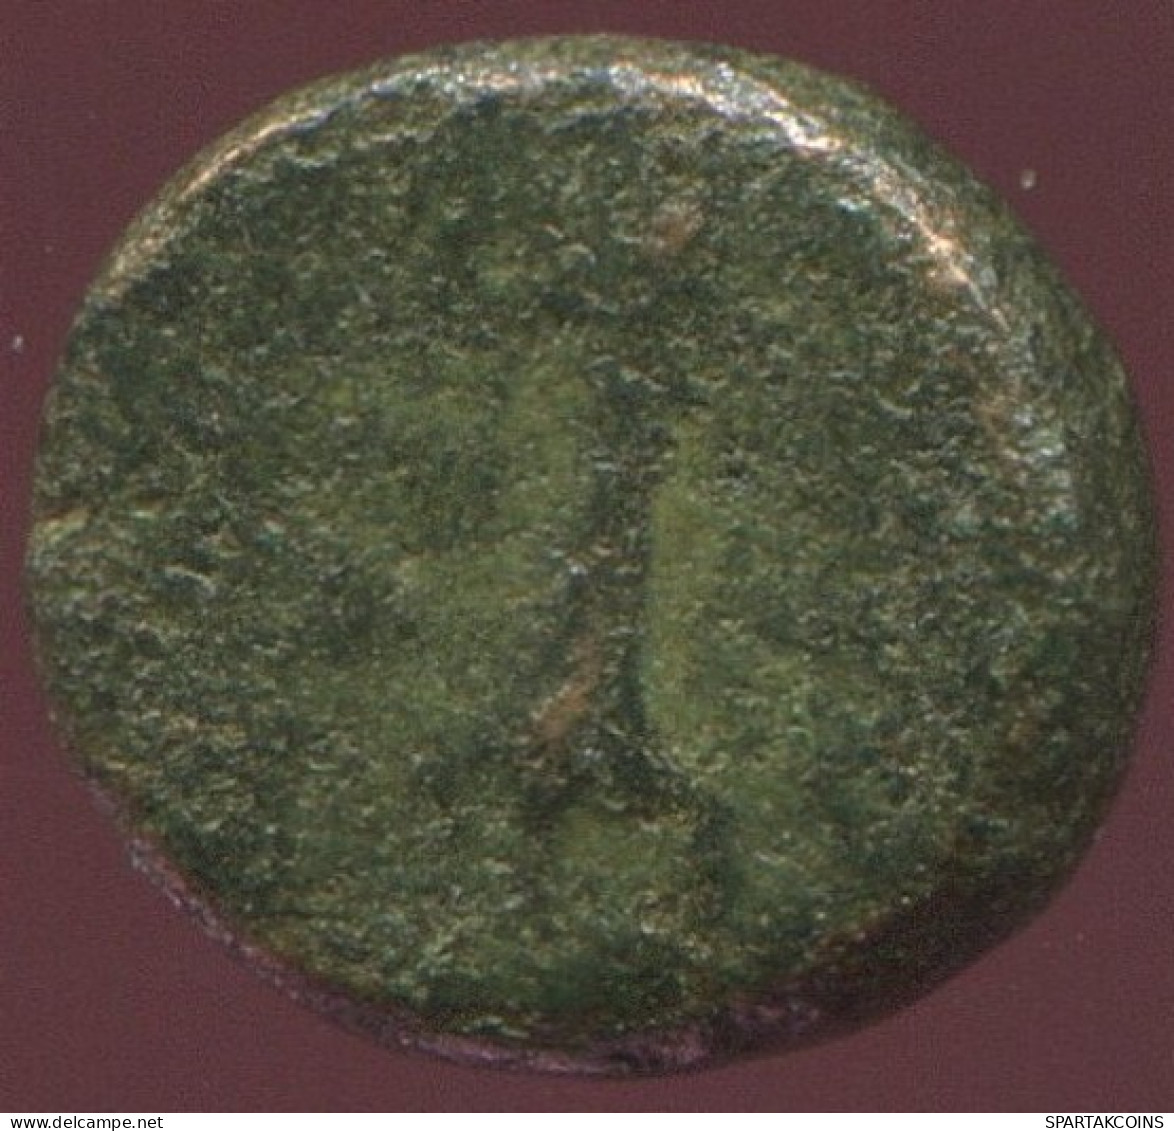 Ancient Authentic Original GREEK Coin 1.1g/9mm #ANT1533.9.U.A - Griechische Münzen